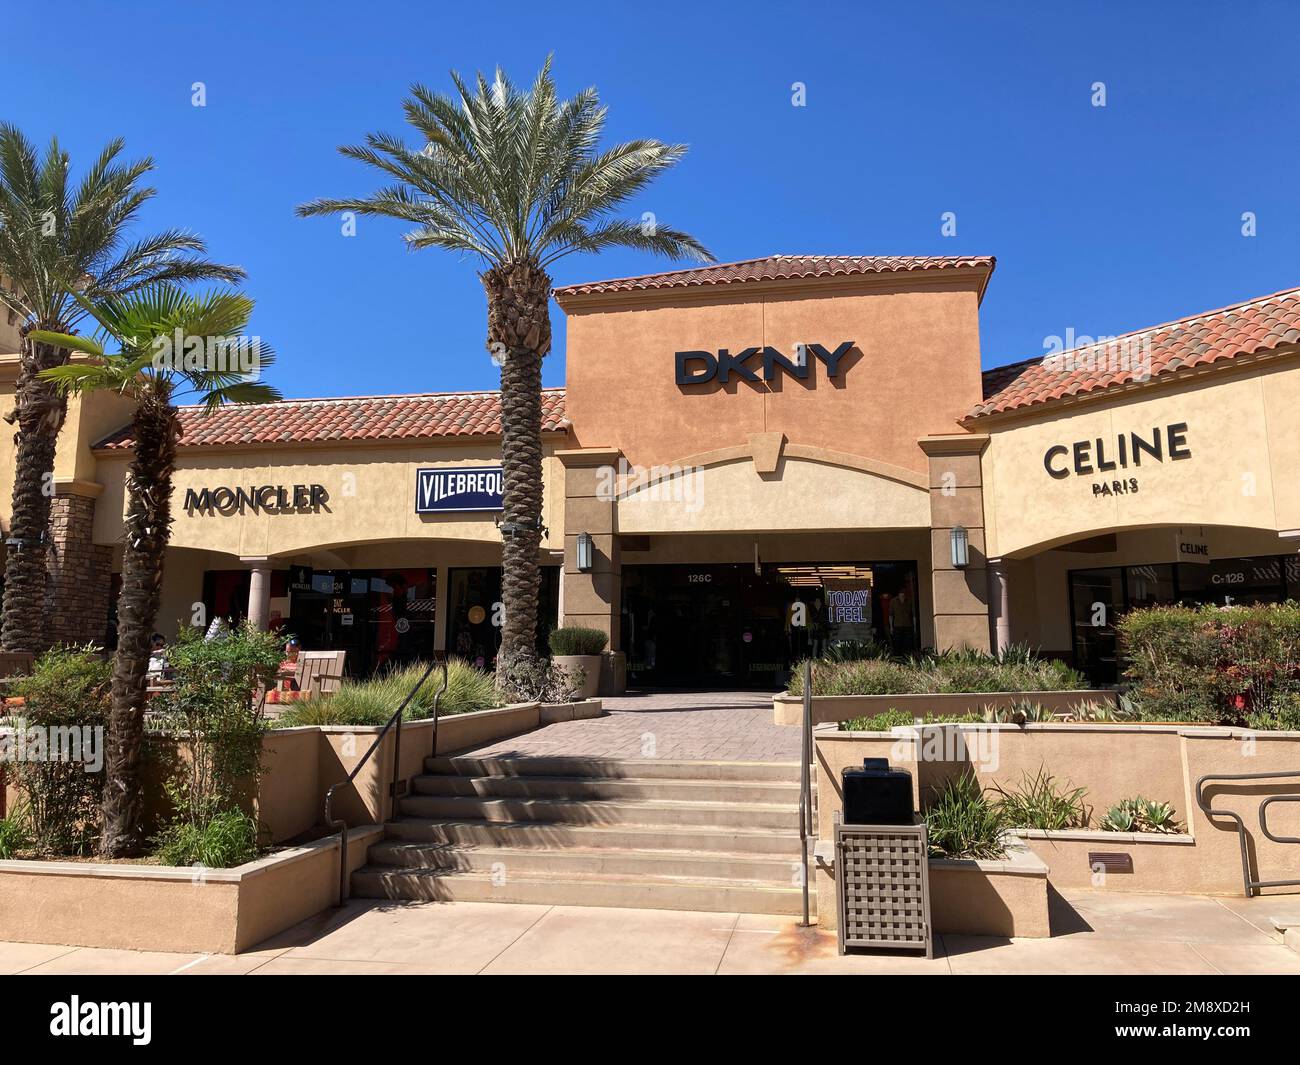 Moncler, DKNY, cartello di Celine Paris, logo sulle facciate dei negozi del  centro commerciale Desert Hills Premium Outlets - Cabazon, California, USA  - 2022 Foto stock - Alamy